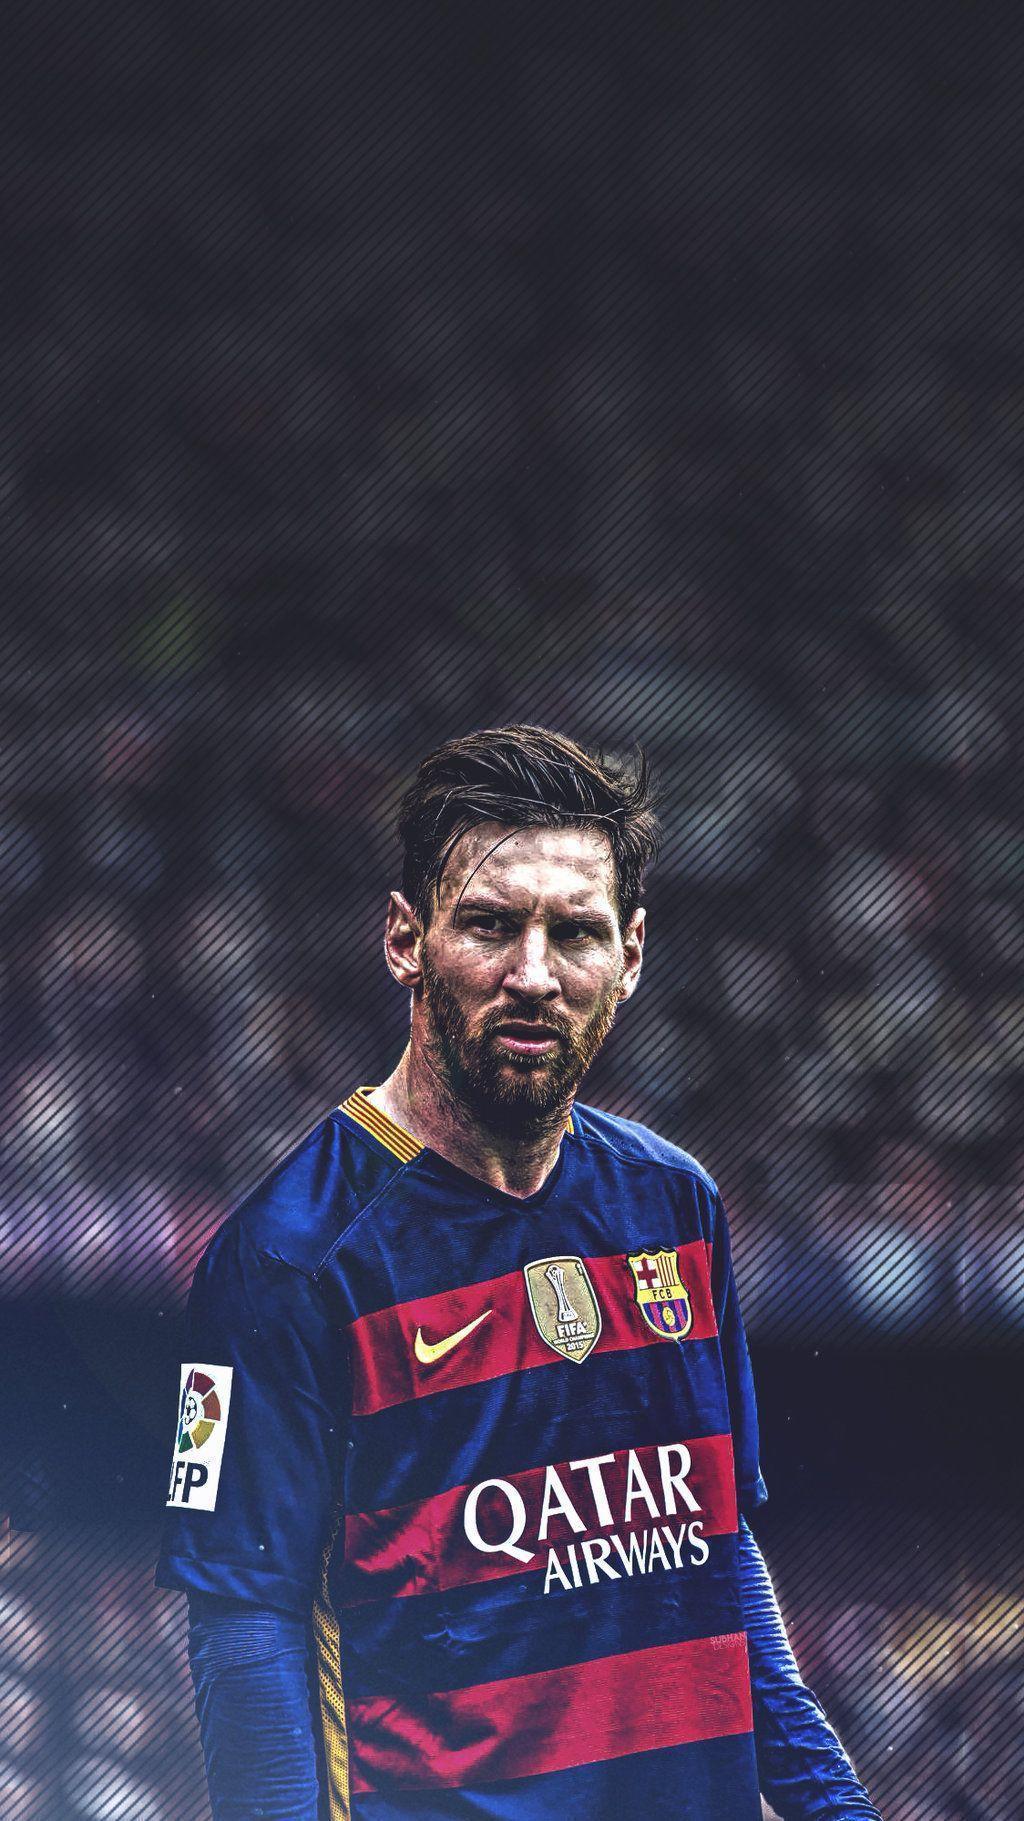 Nếu bạn muốn có một hình nền Lionel Messi chất lượng cao, thì việc tải xuống không hề khó khăn. Bạn sẽ được thưởng thức những khoảnh khắc tuyệt vời của anh ta với chất lượng hình ảnh tuyệt vời.